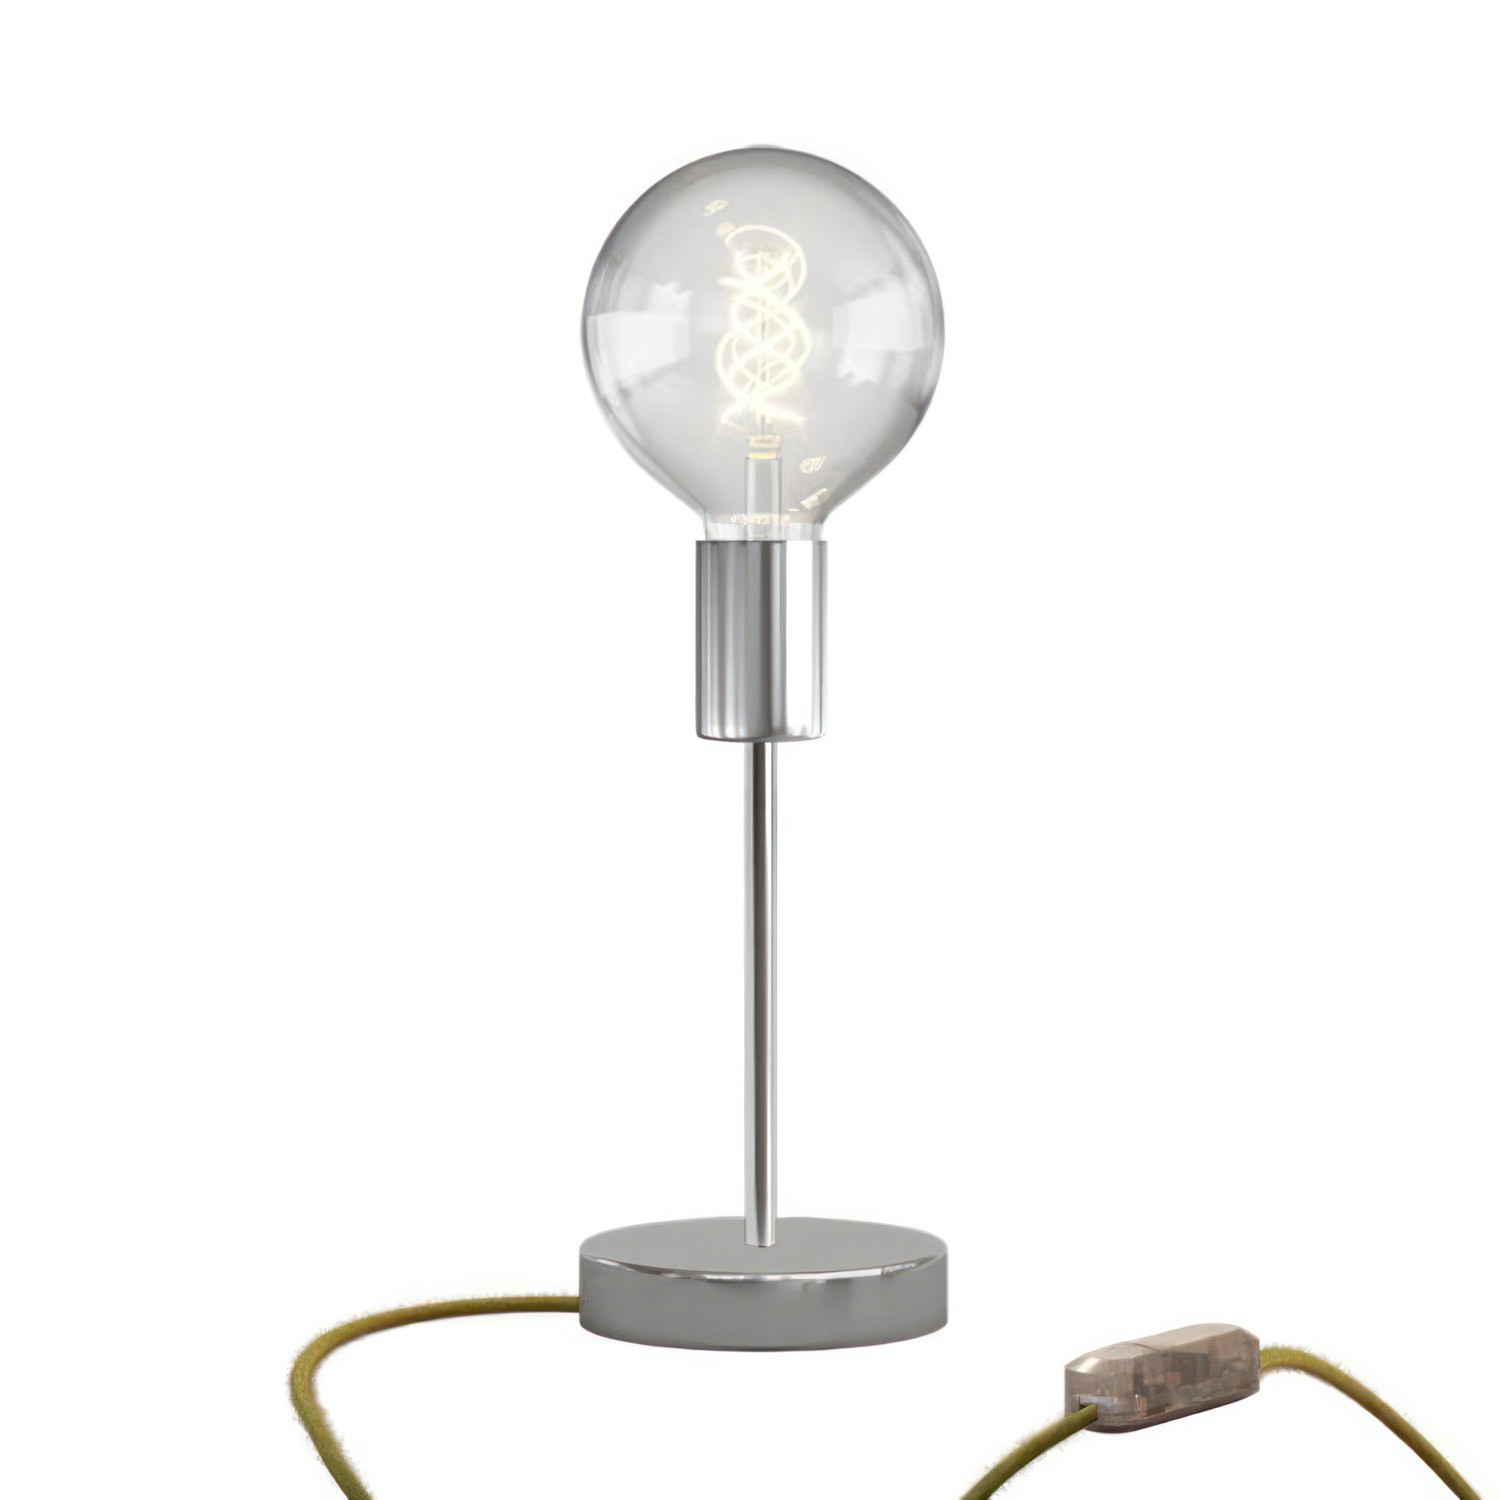 Lámpara de mesa metálica Alzaluce Globo con clavija de 2 polos